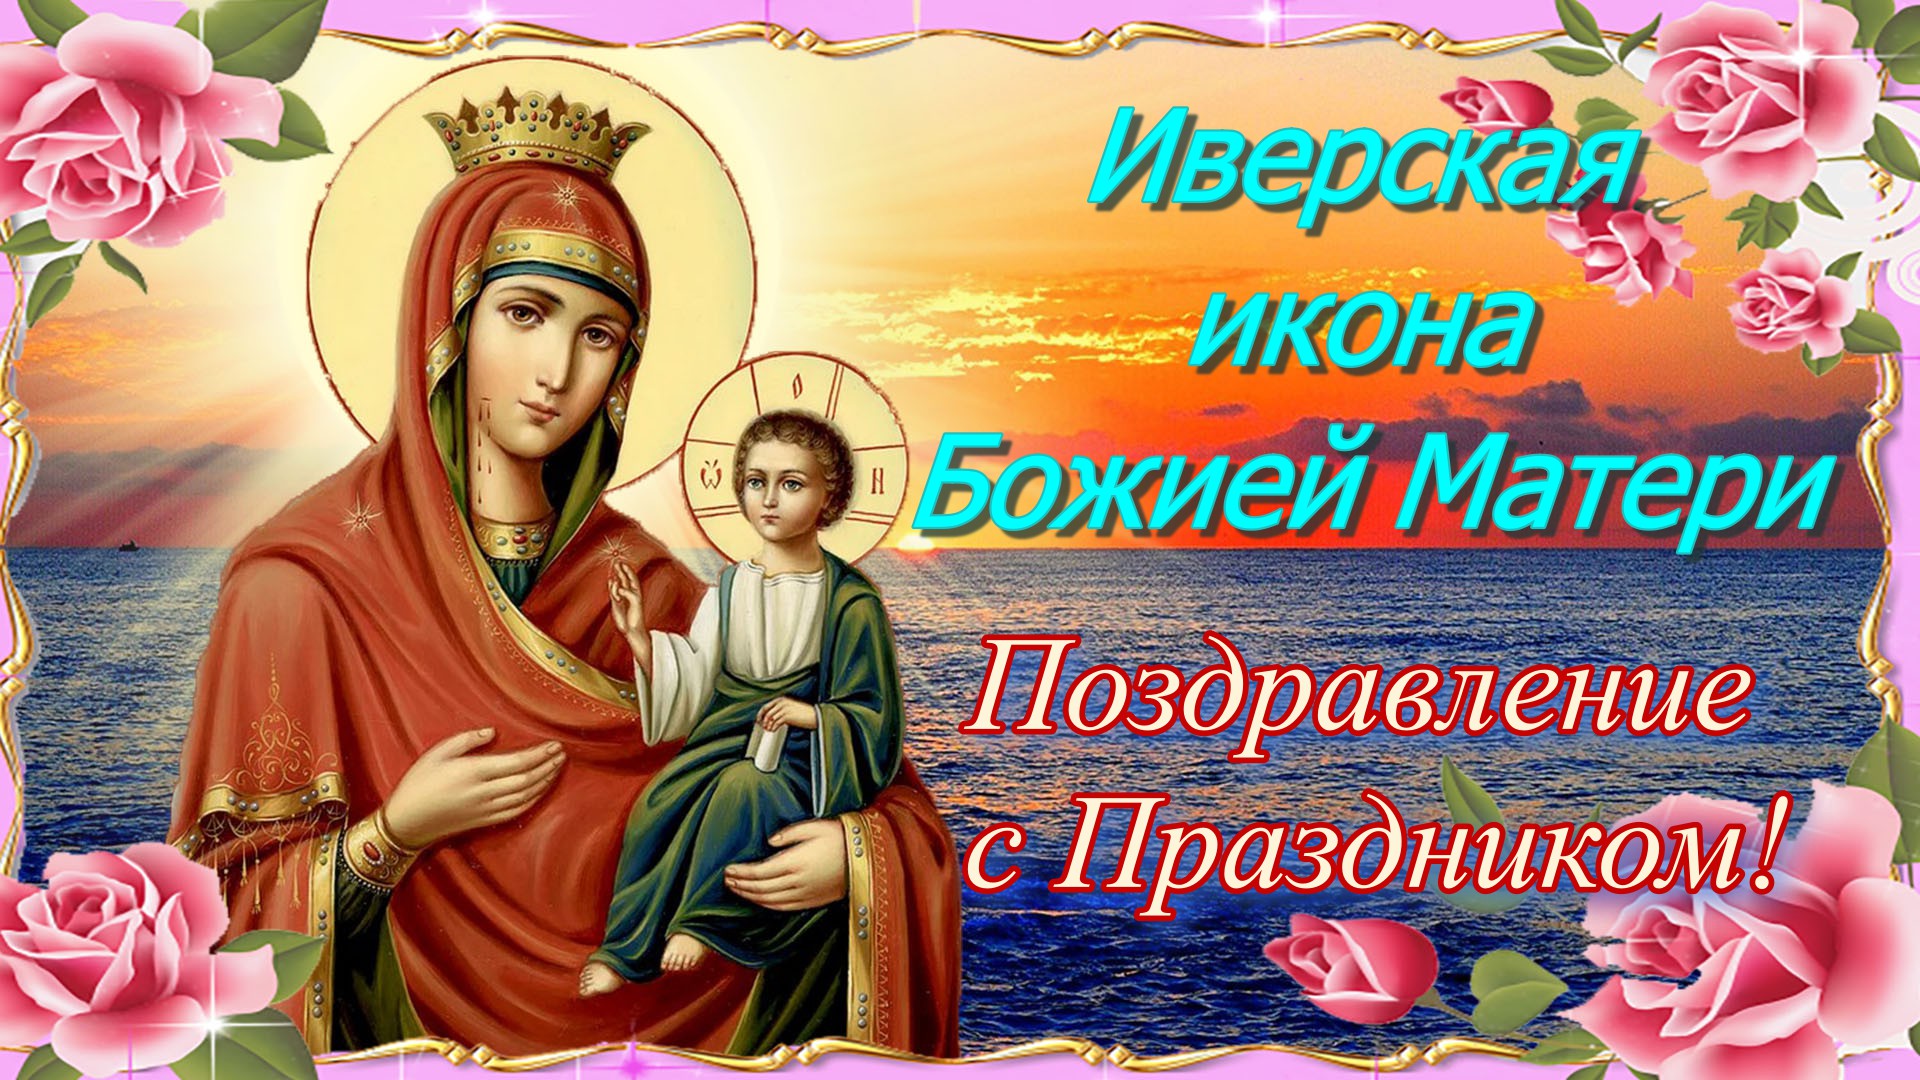 иверская икона божией матери фото поздравление